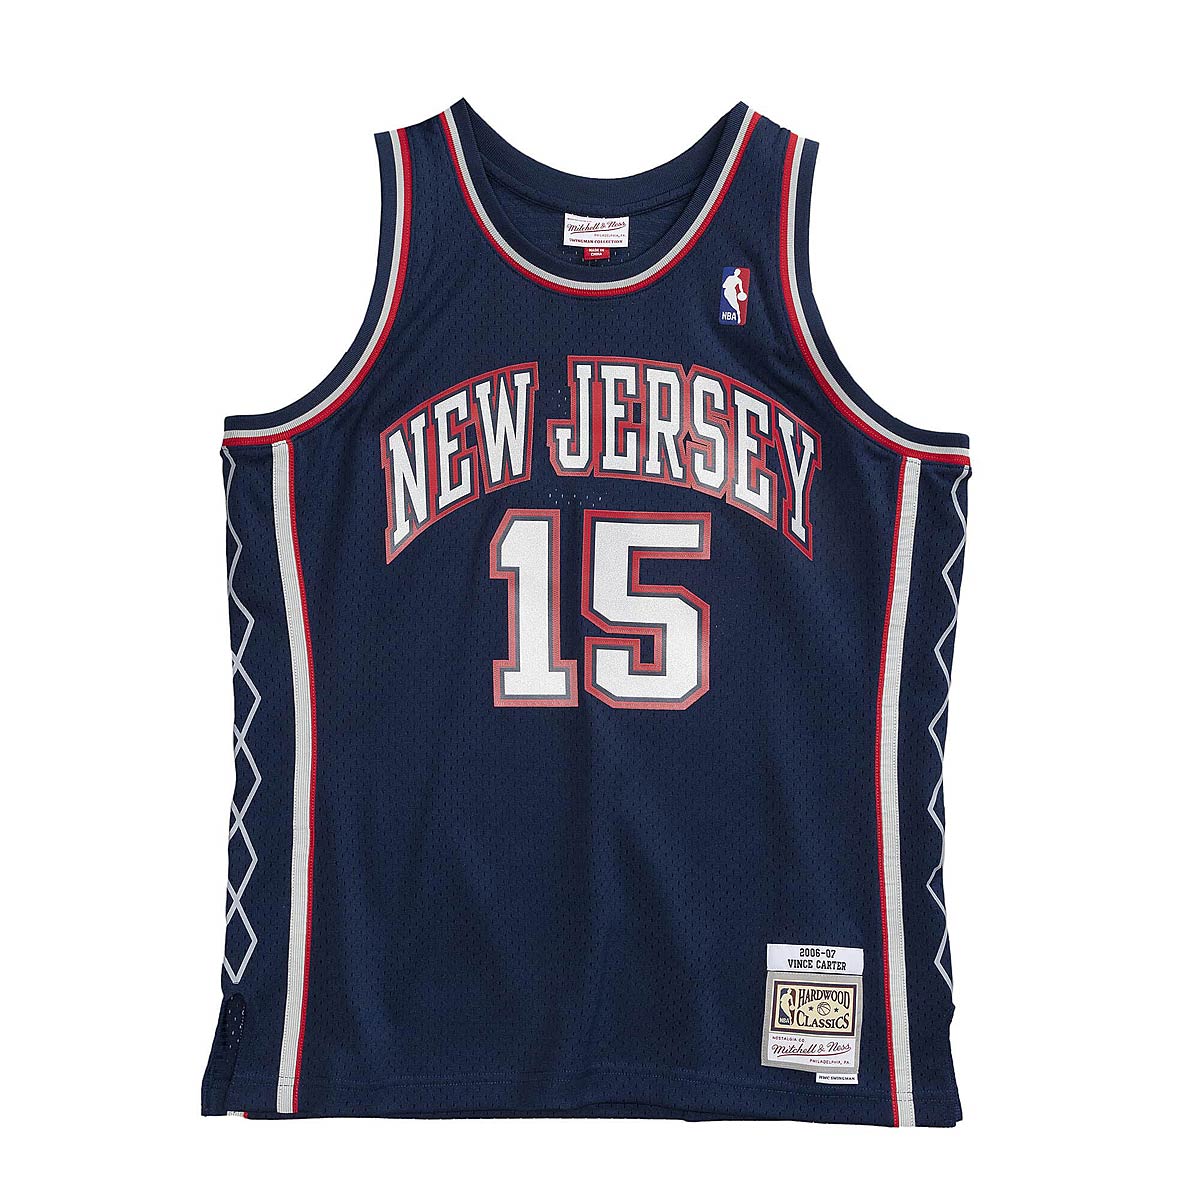 Nba New Jersey Nets 